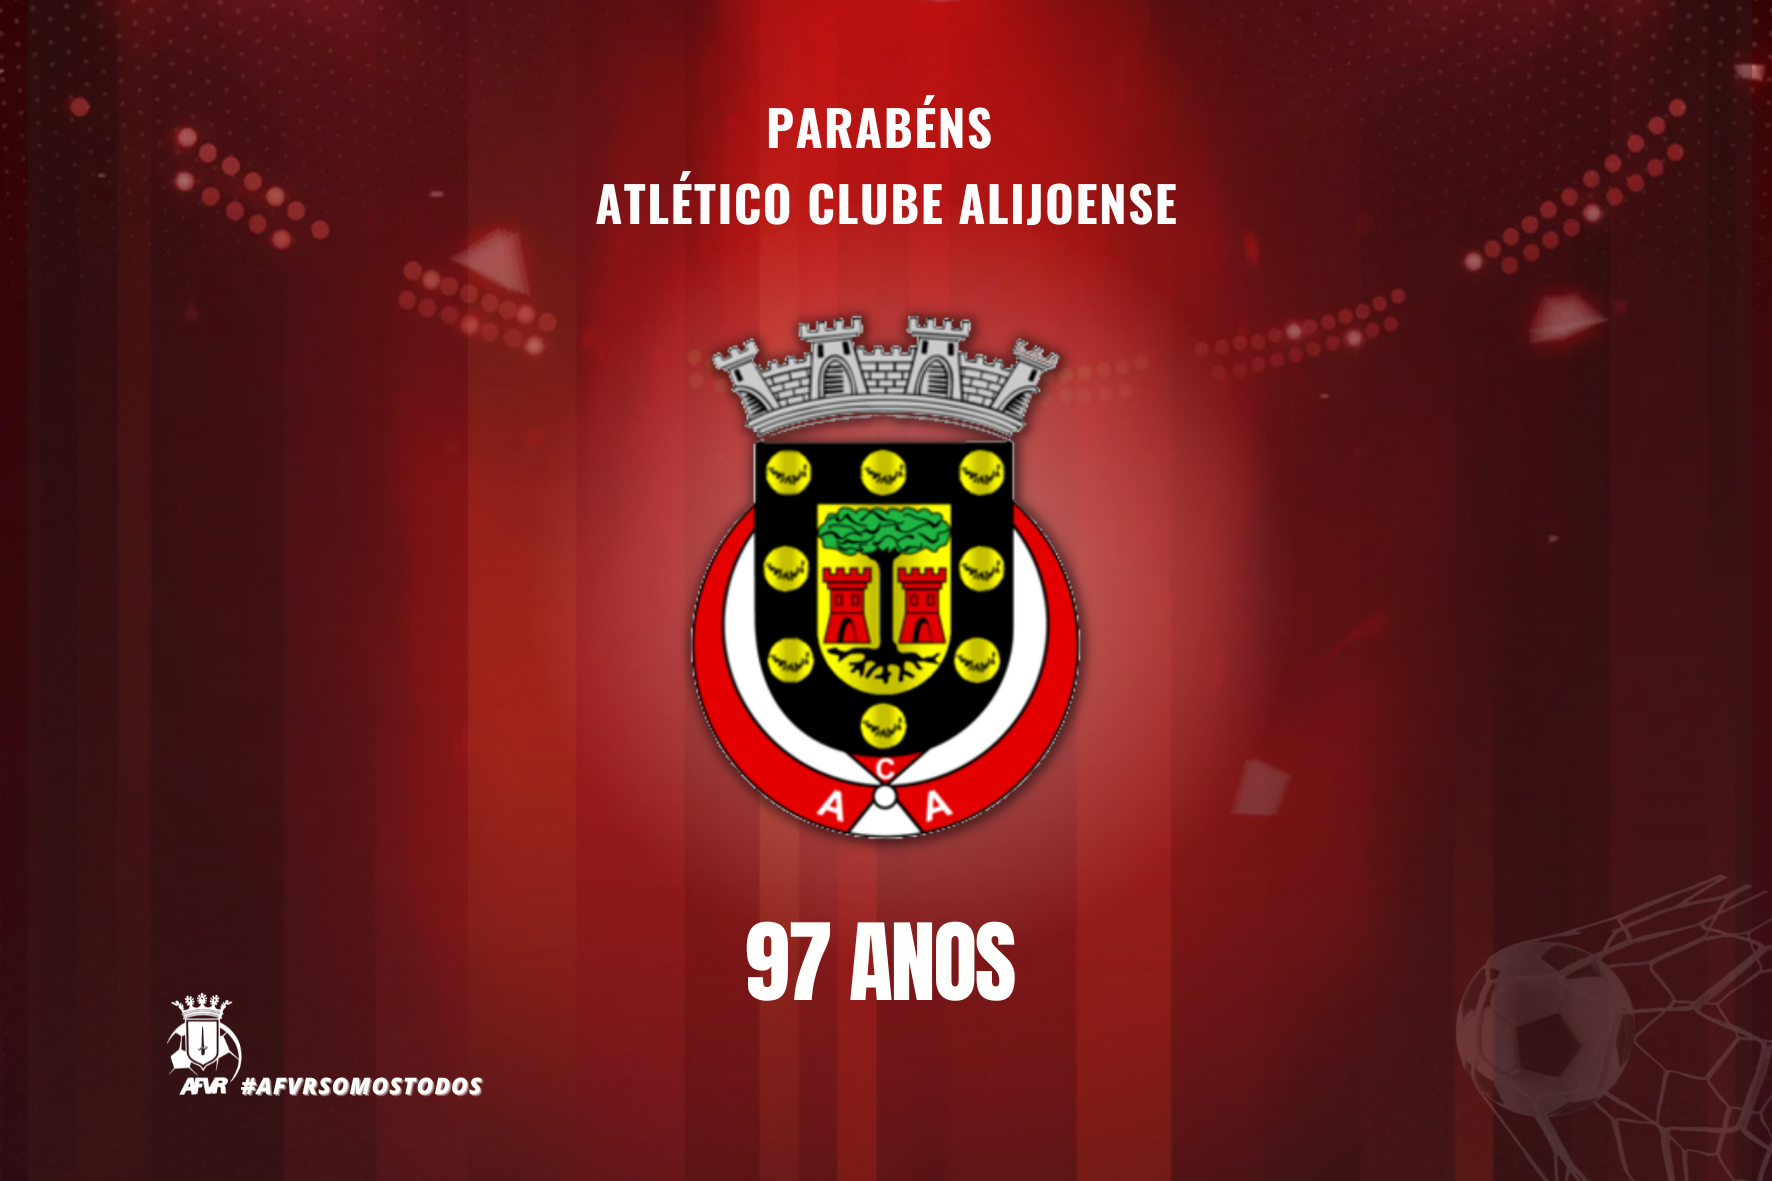  Atlético Clube Alijoense está de Parabéns